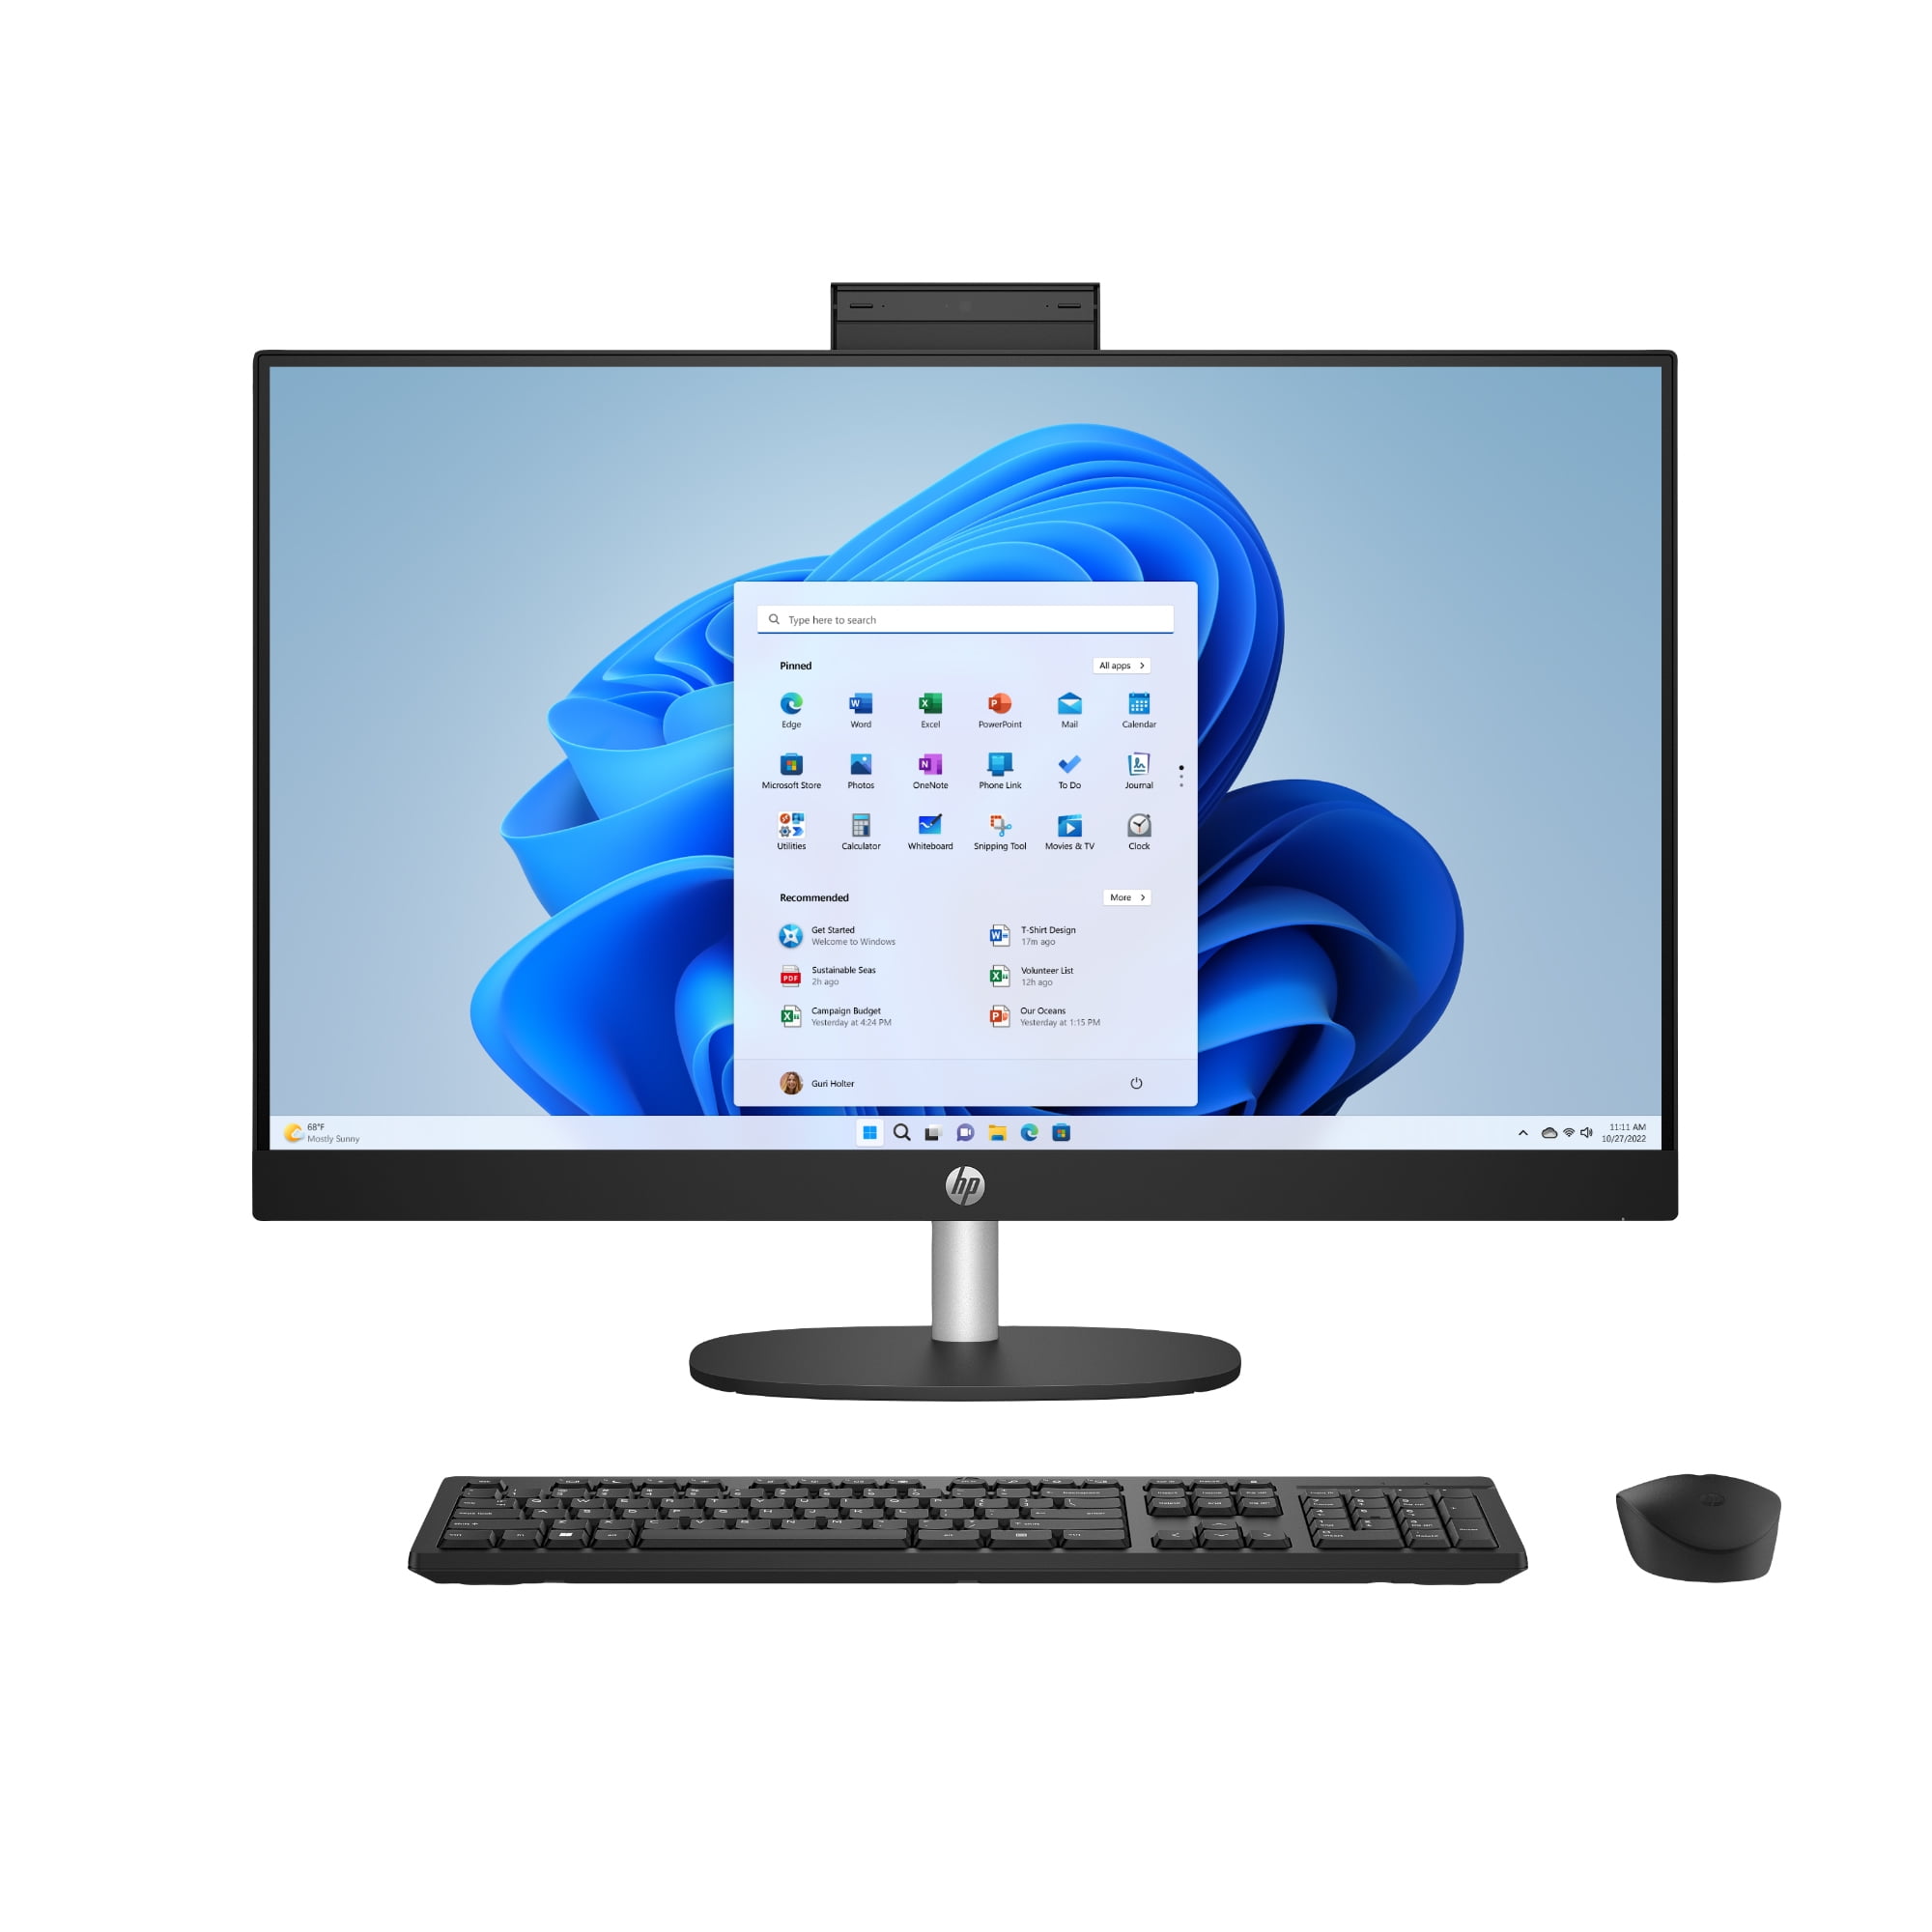 HP 27 inch Touch Screen All-in-One Desktop PC, AMD Ryzen 7, 12GB